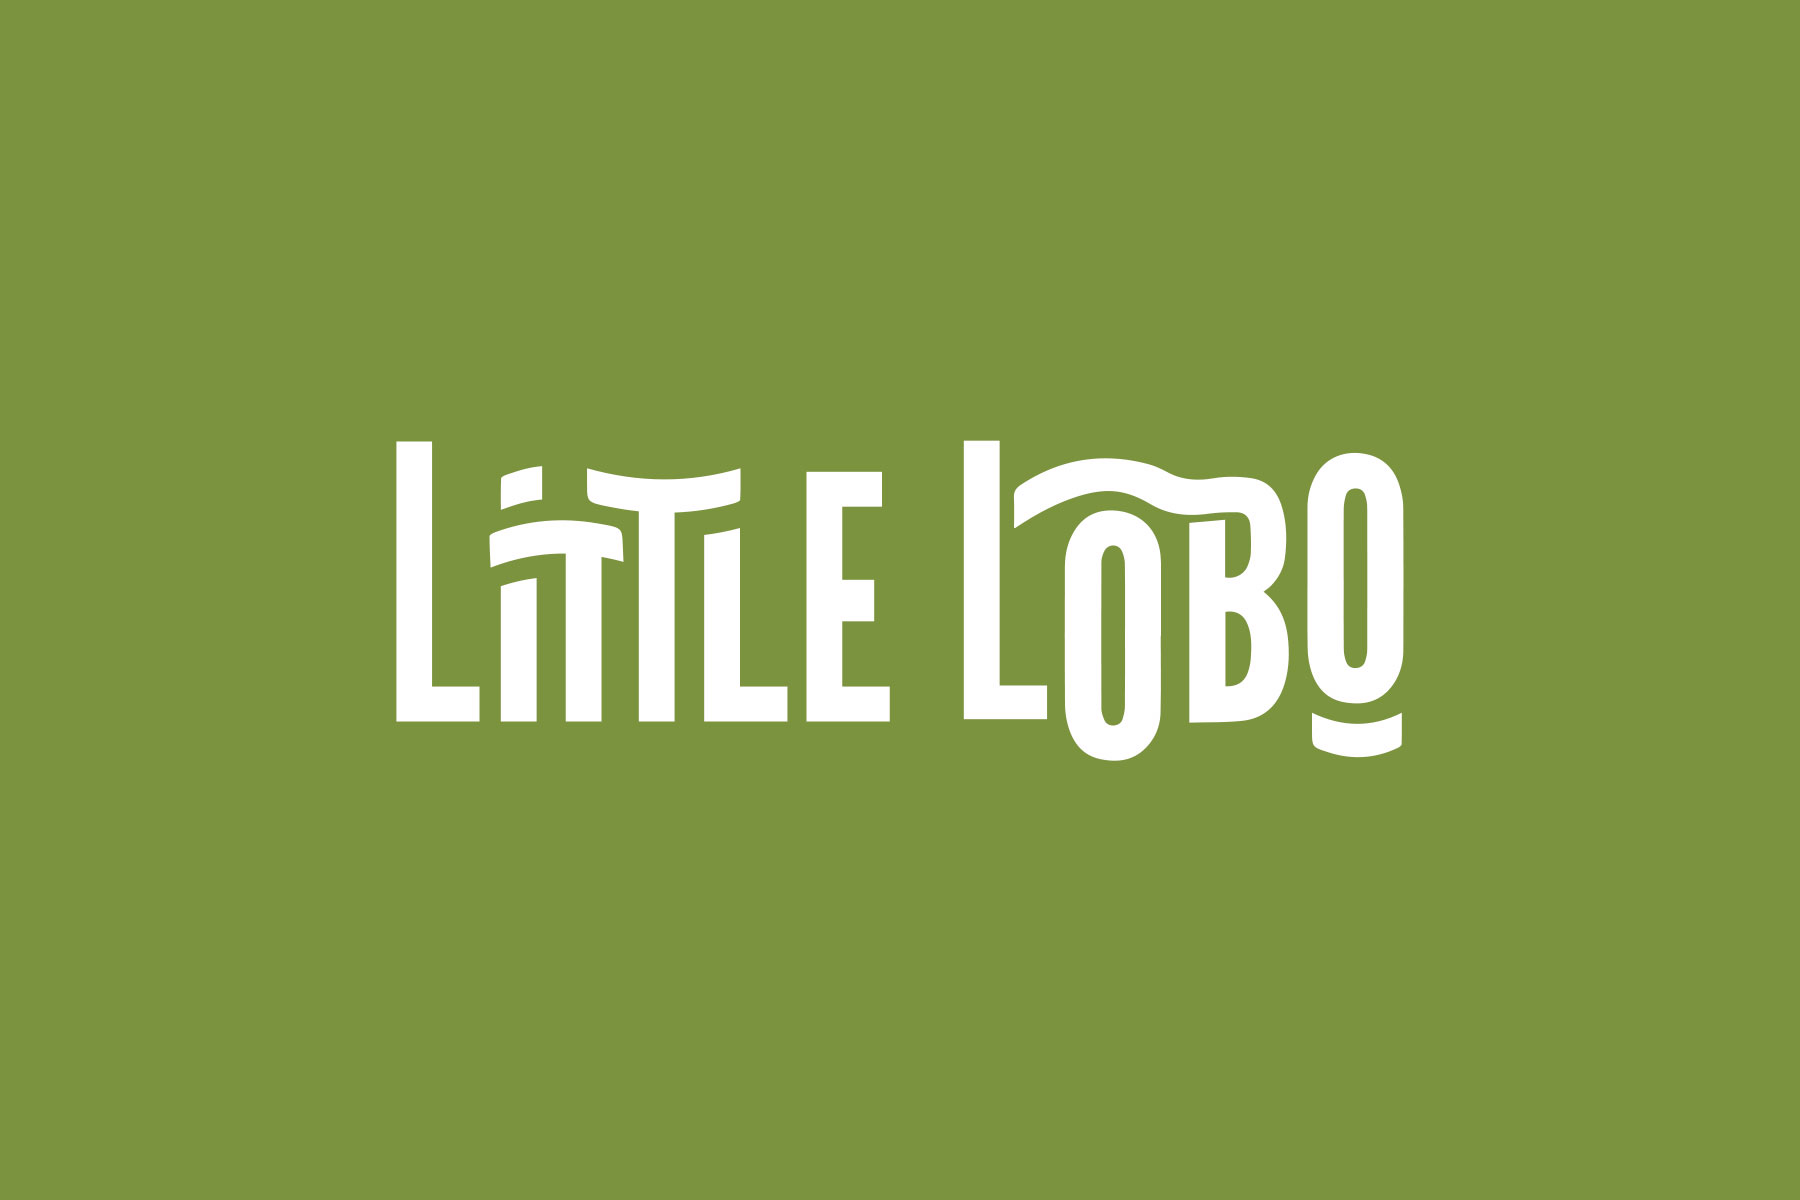 Little Lobo